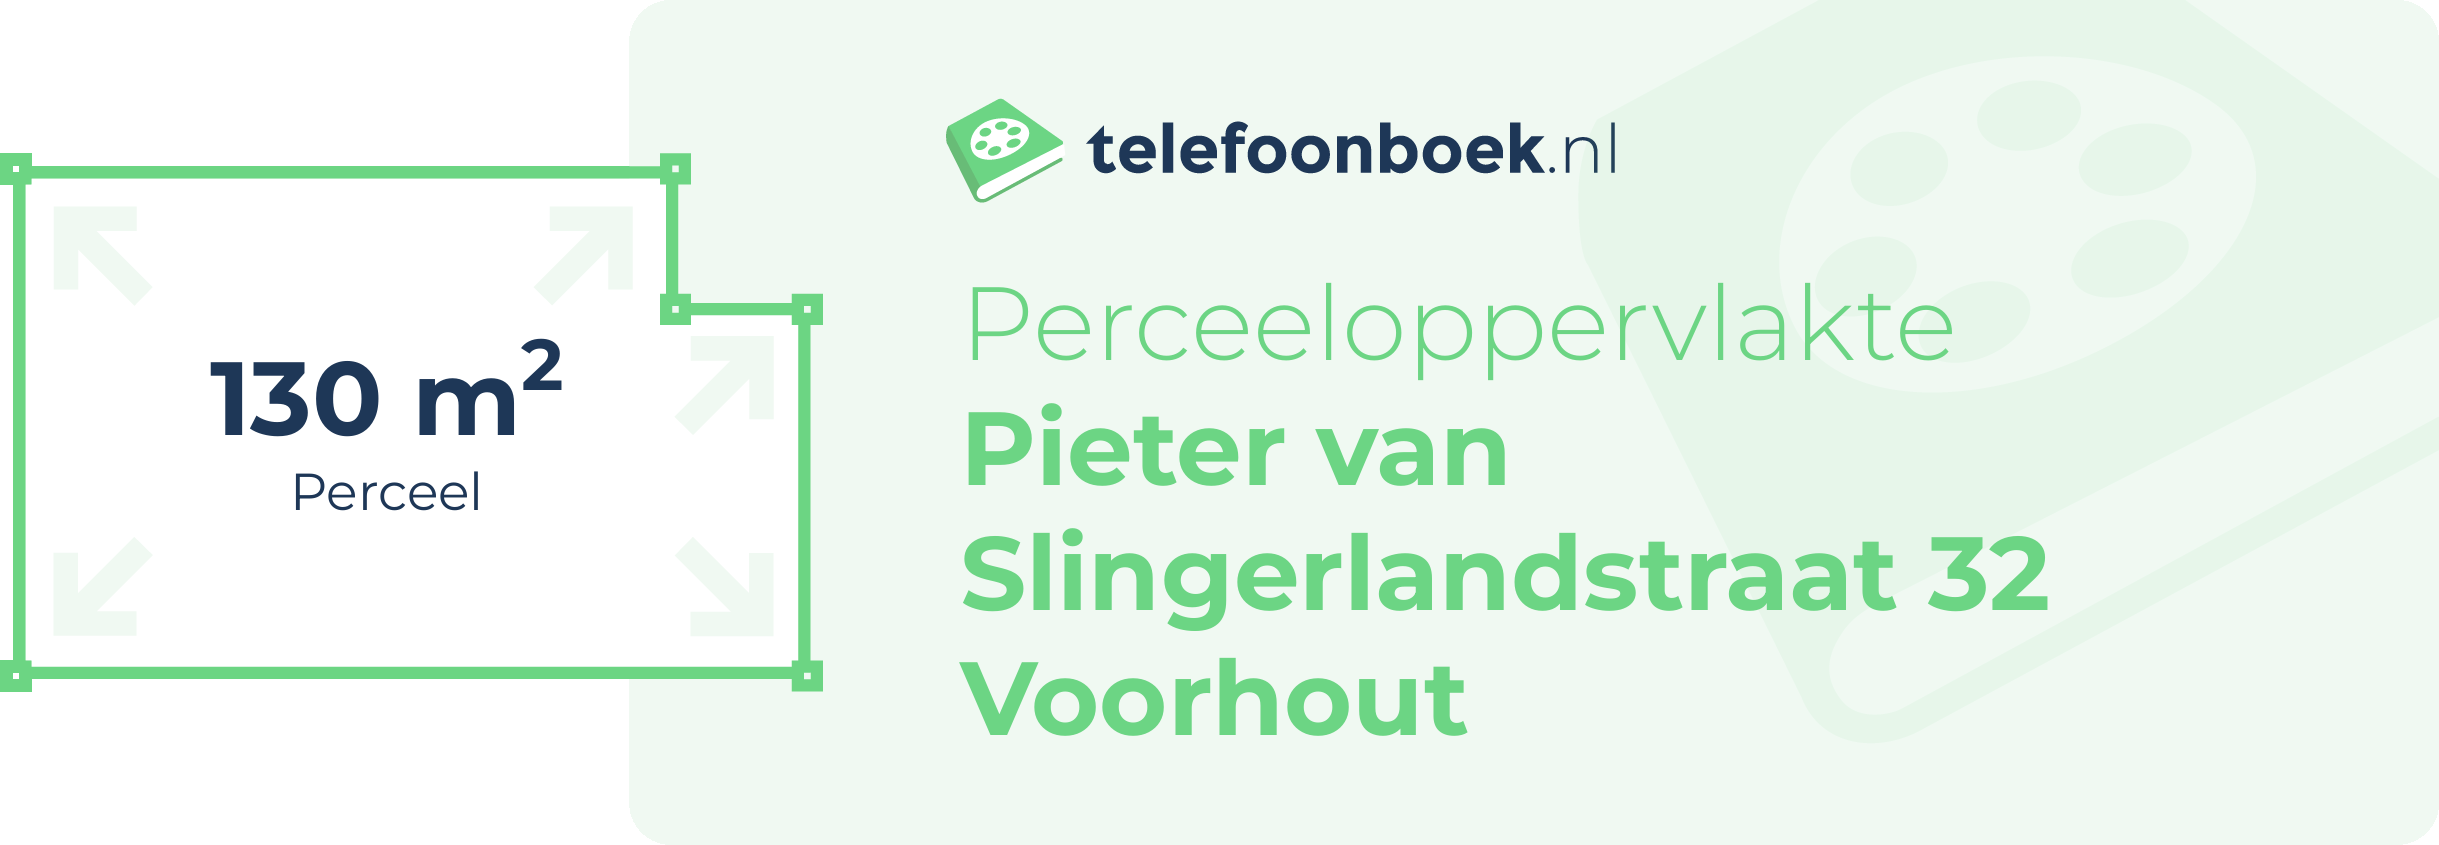 Perceeloppervlakte Pieter Van Slingerlandstraat 32 Voorhout